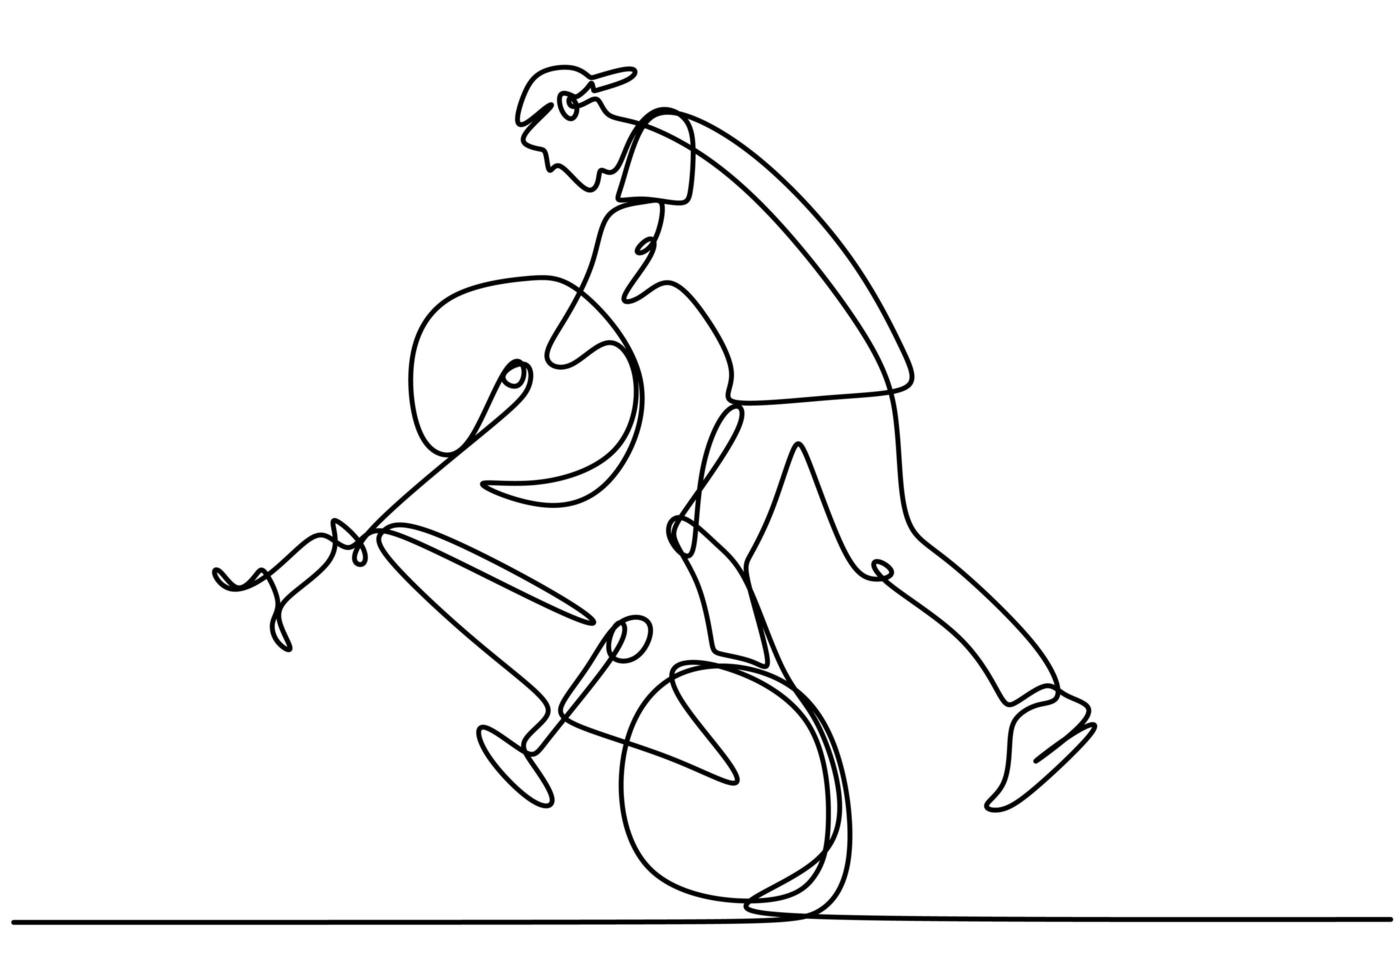 enda kontinuerlig linje ritning av ung cykel ryttare visa freestyle stå på en cykel extremt riskabelt trick. en linje rita design vektorillustration för freestyle vektor